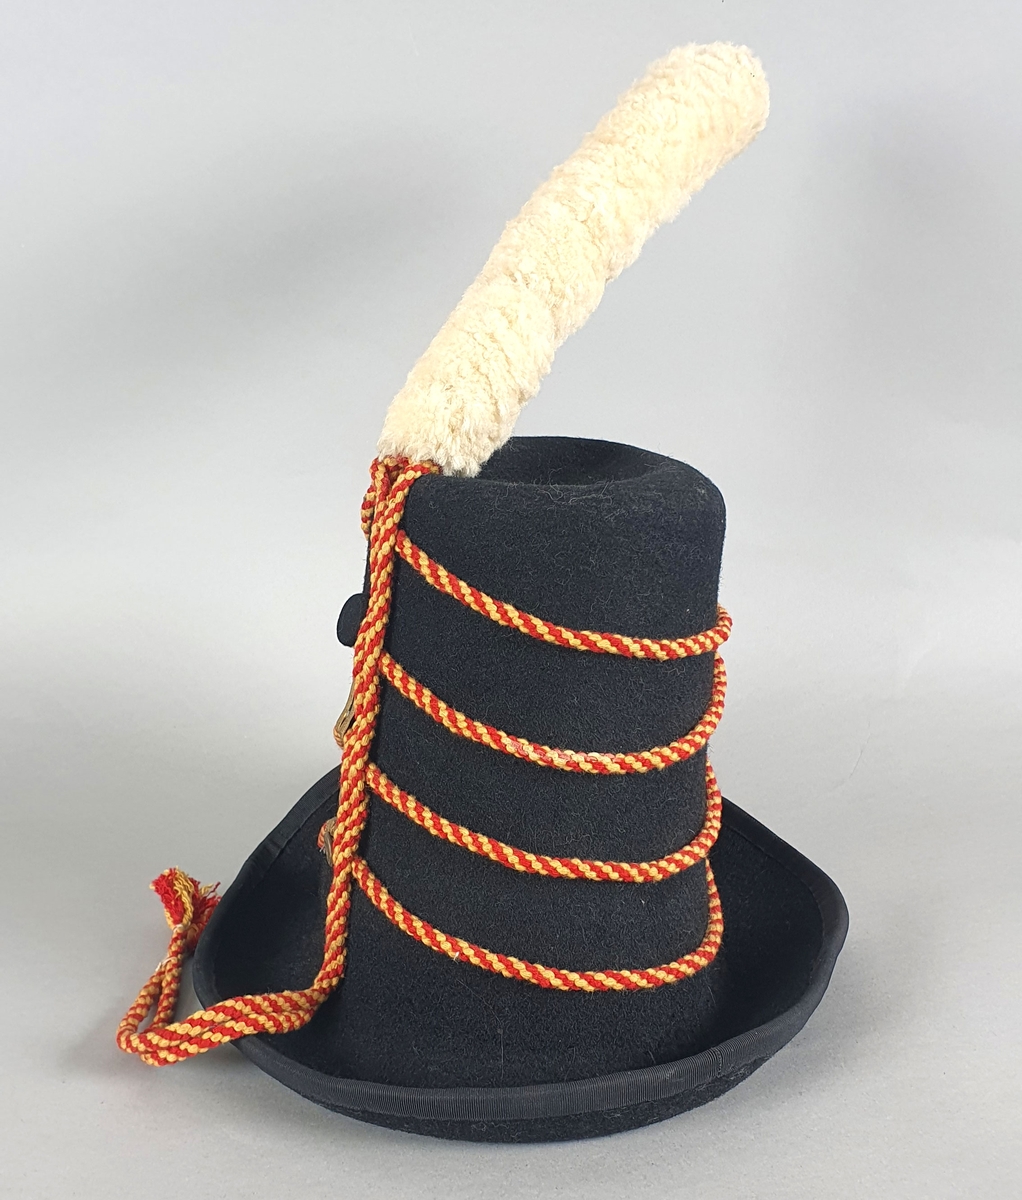 Svart hatt av filt med skinnreim på innsiden og med hvit dusk av ull på toppen og med røde og gule flettede bånd rundt pullen, festet med gullbånd og knapper. Hatten er en kopi av en offisershatt.